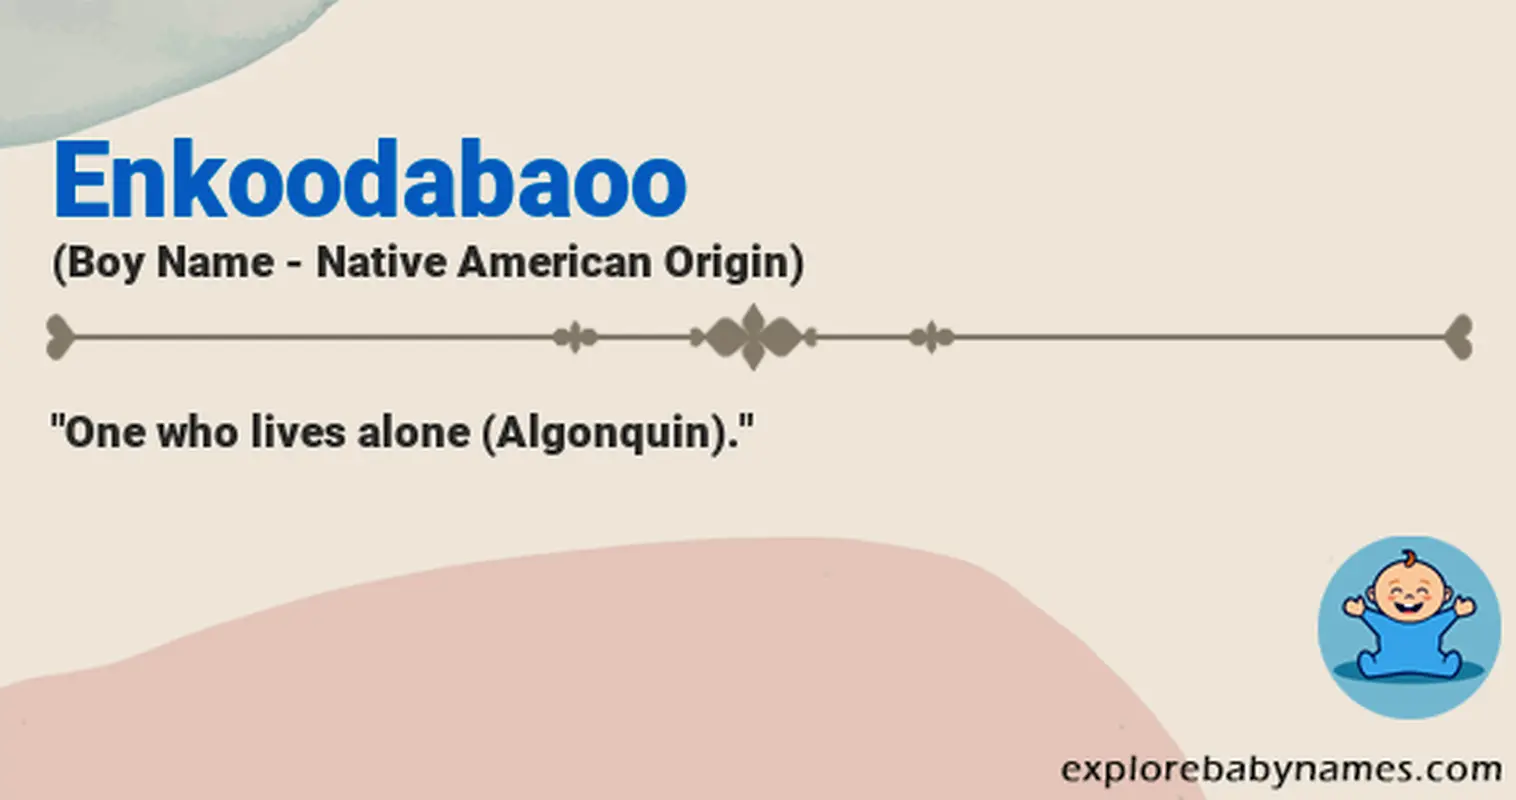 Meaning of Enkoodabaoo